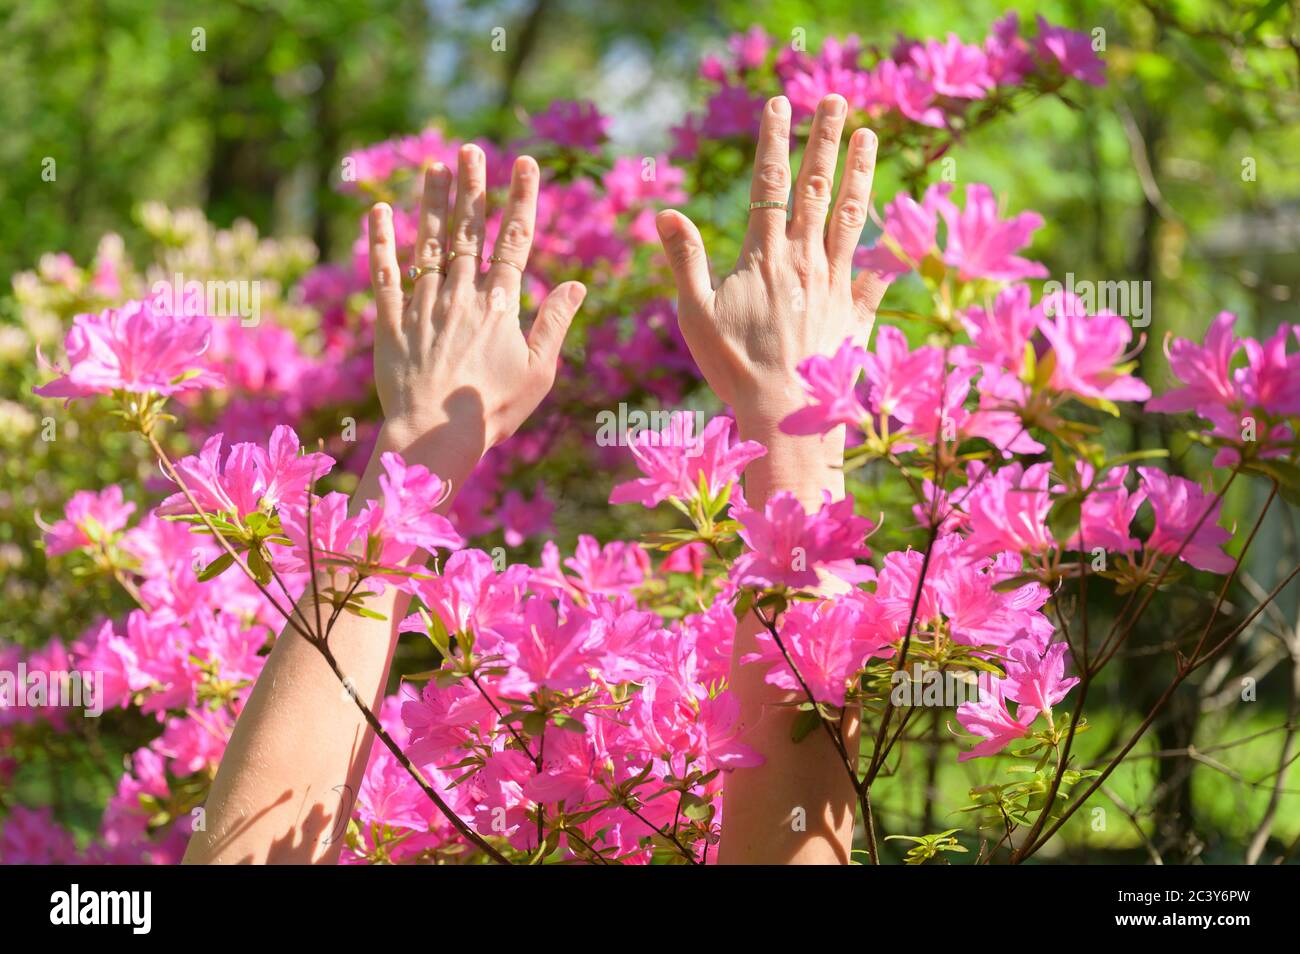 Las manos femeninas entre las flores rosadas Foto de stock